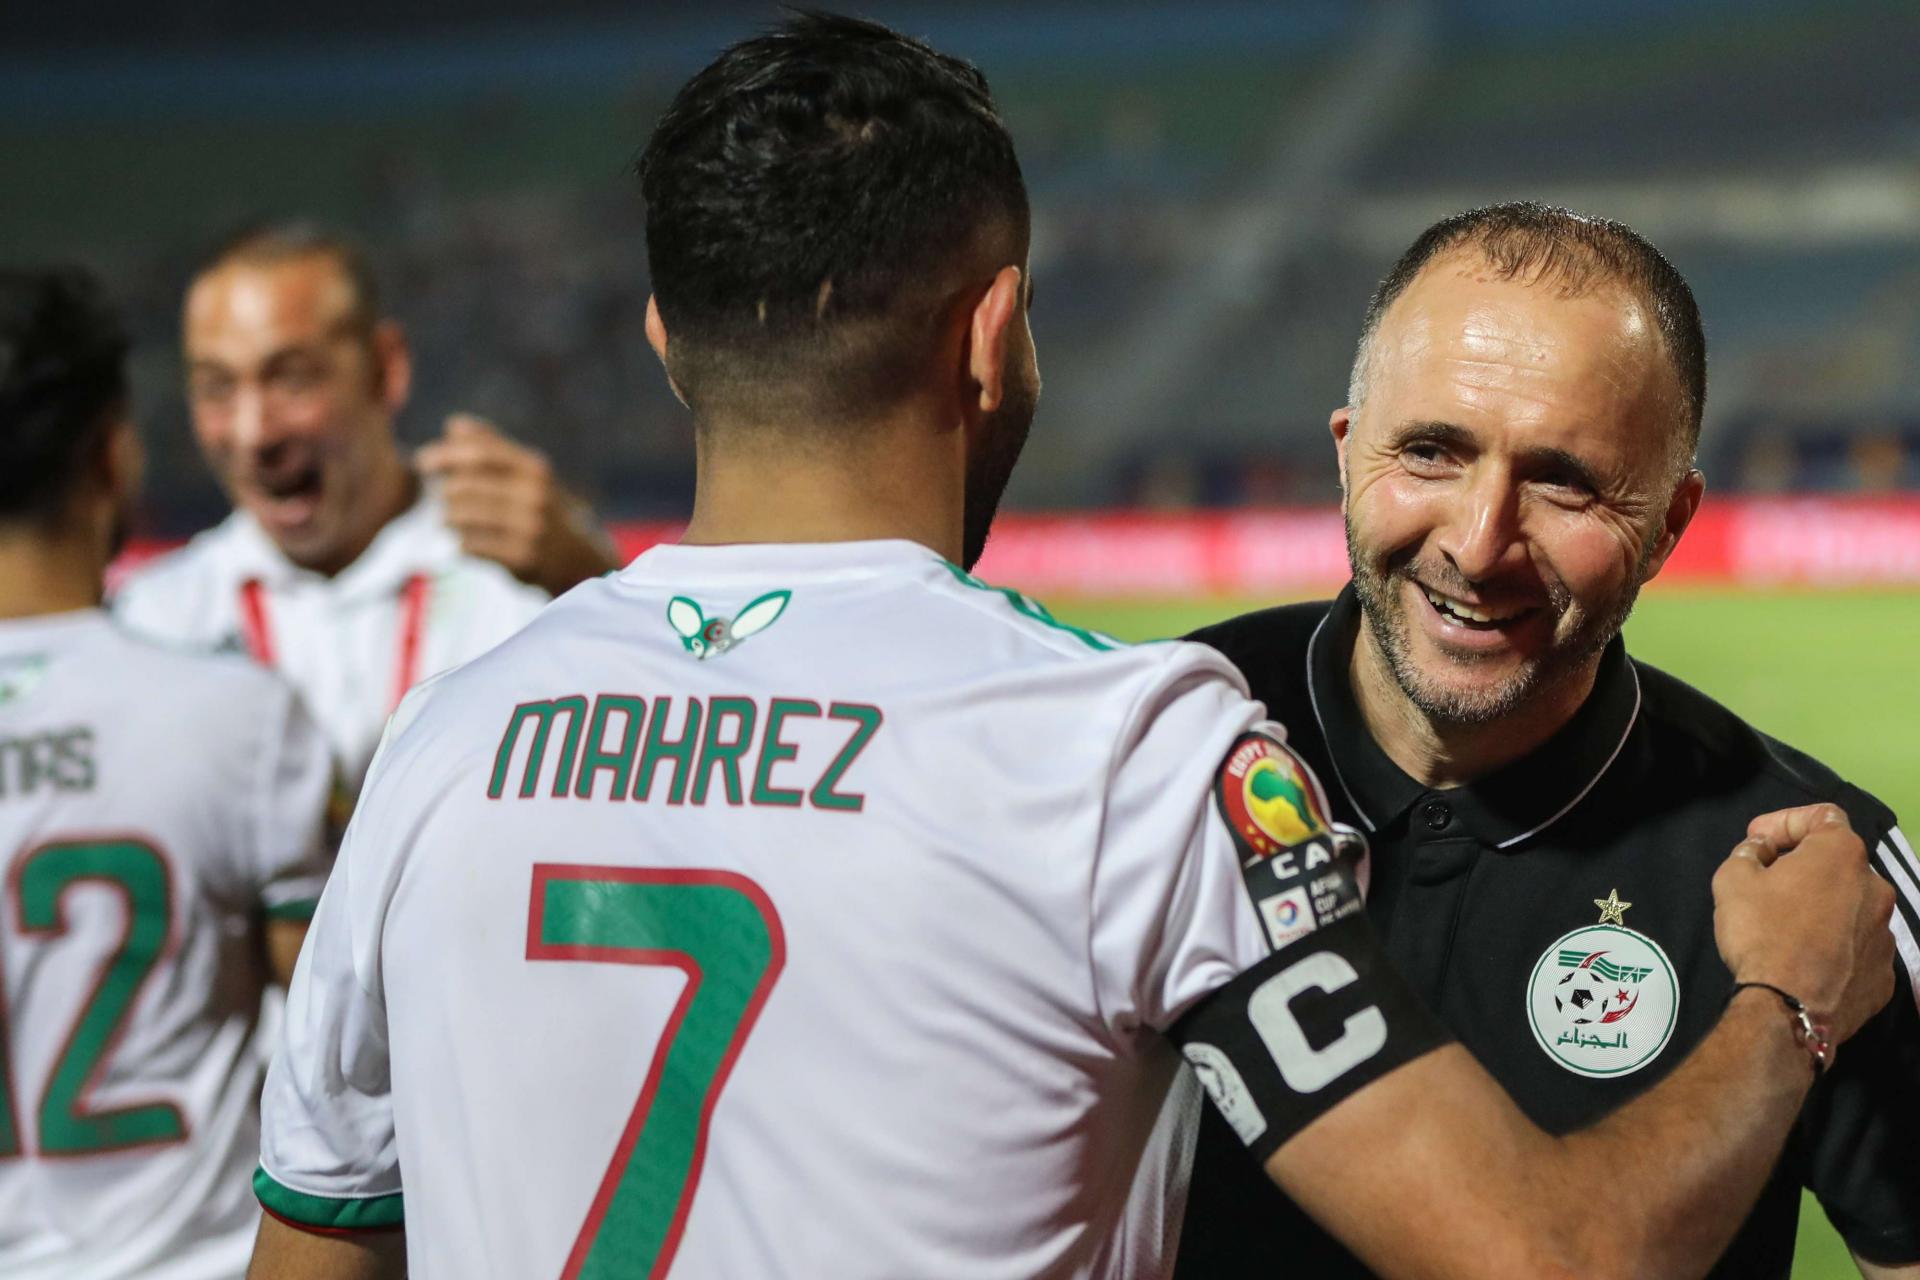 منتخب الجزائر يحطم الرقم القياسي على المستوى الإفريقي بعد فوزه على تونس